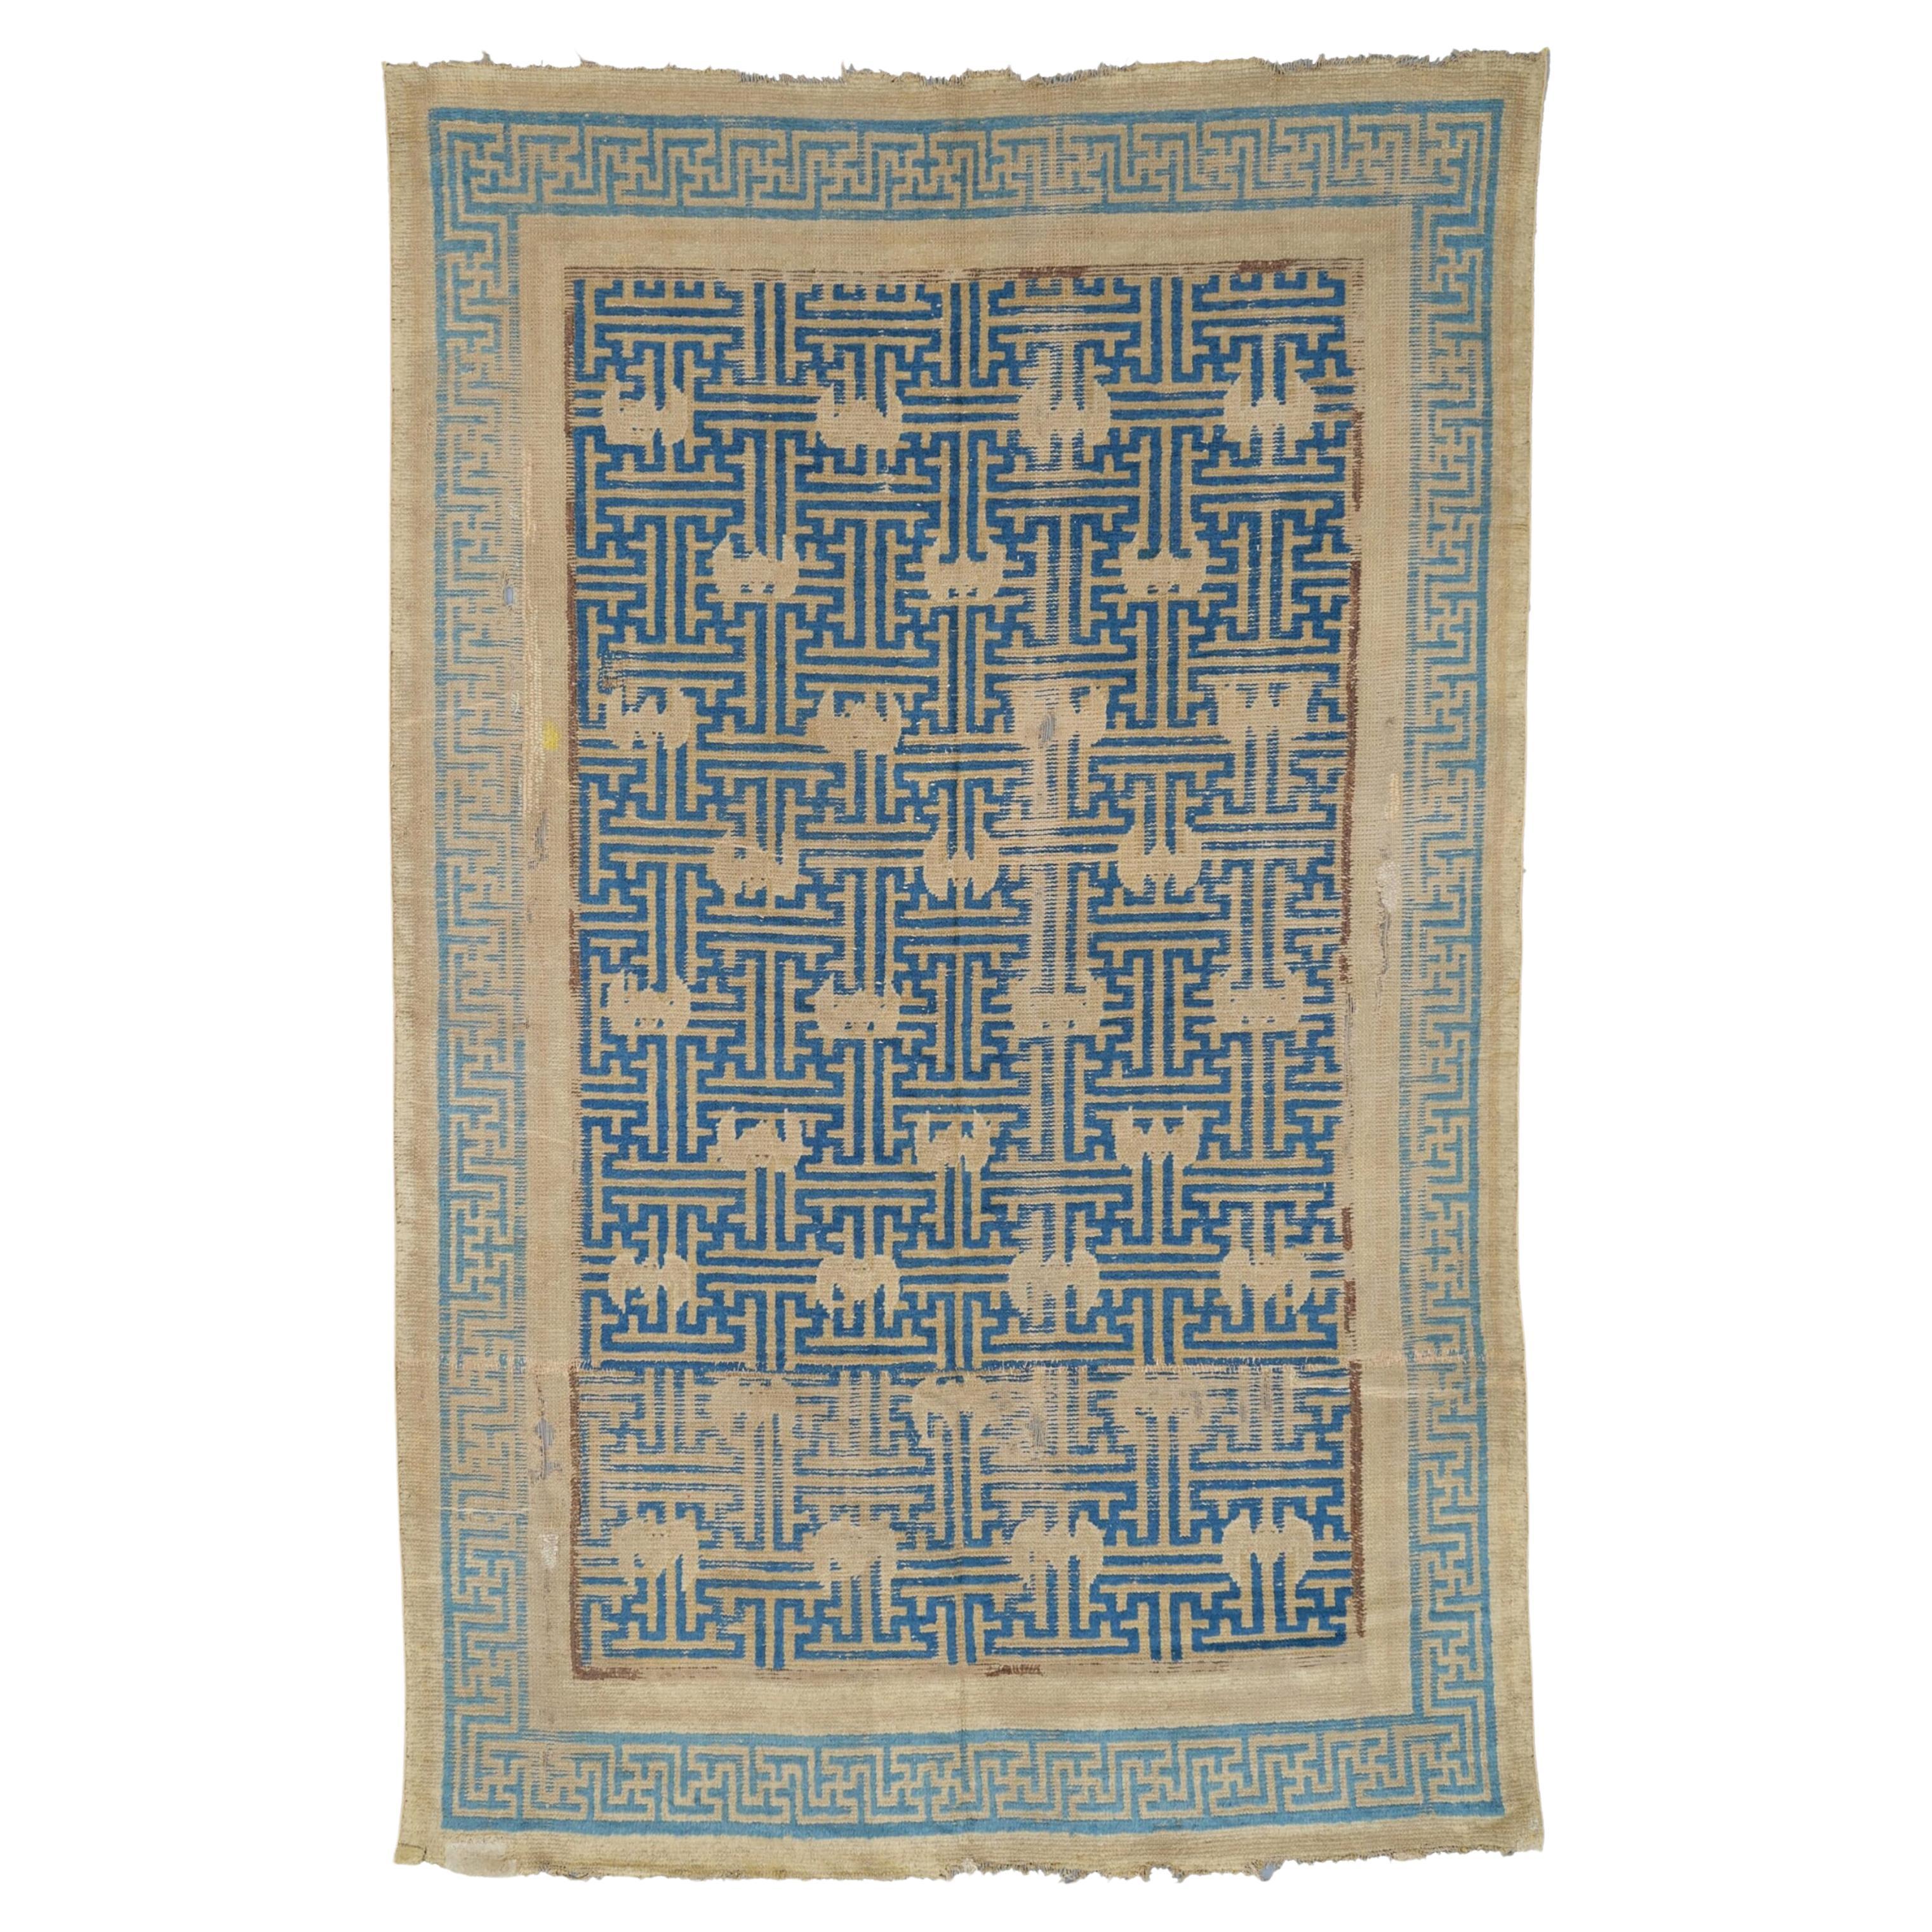 Ningxia-Teppichfragment aus dem 17. Jahrhundert – Antikes chinesisches Teppichfragment